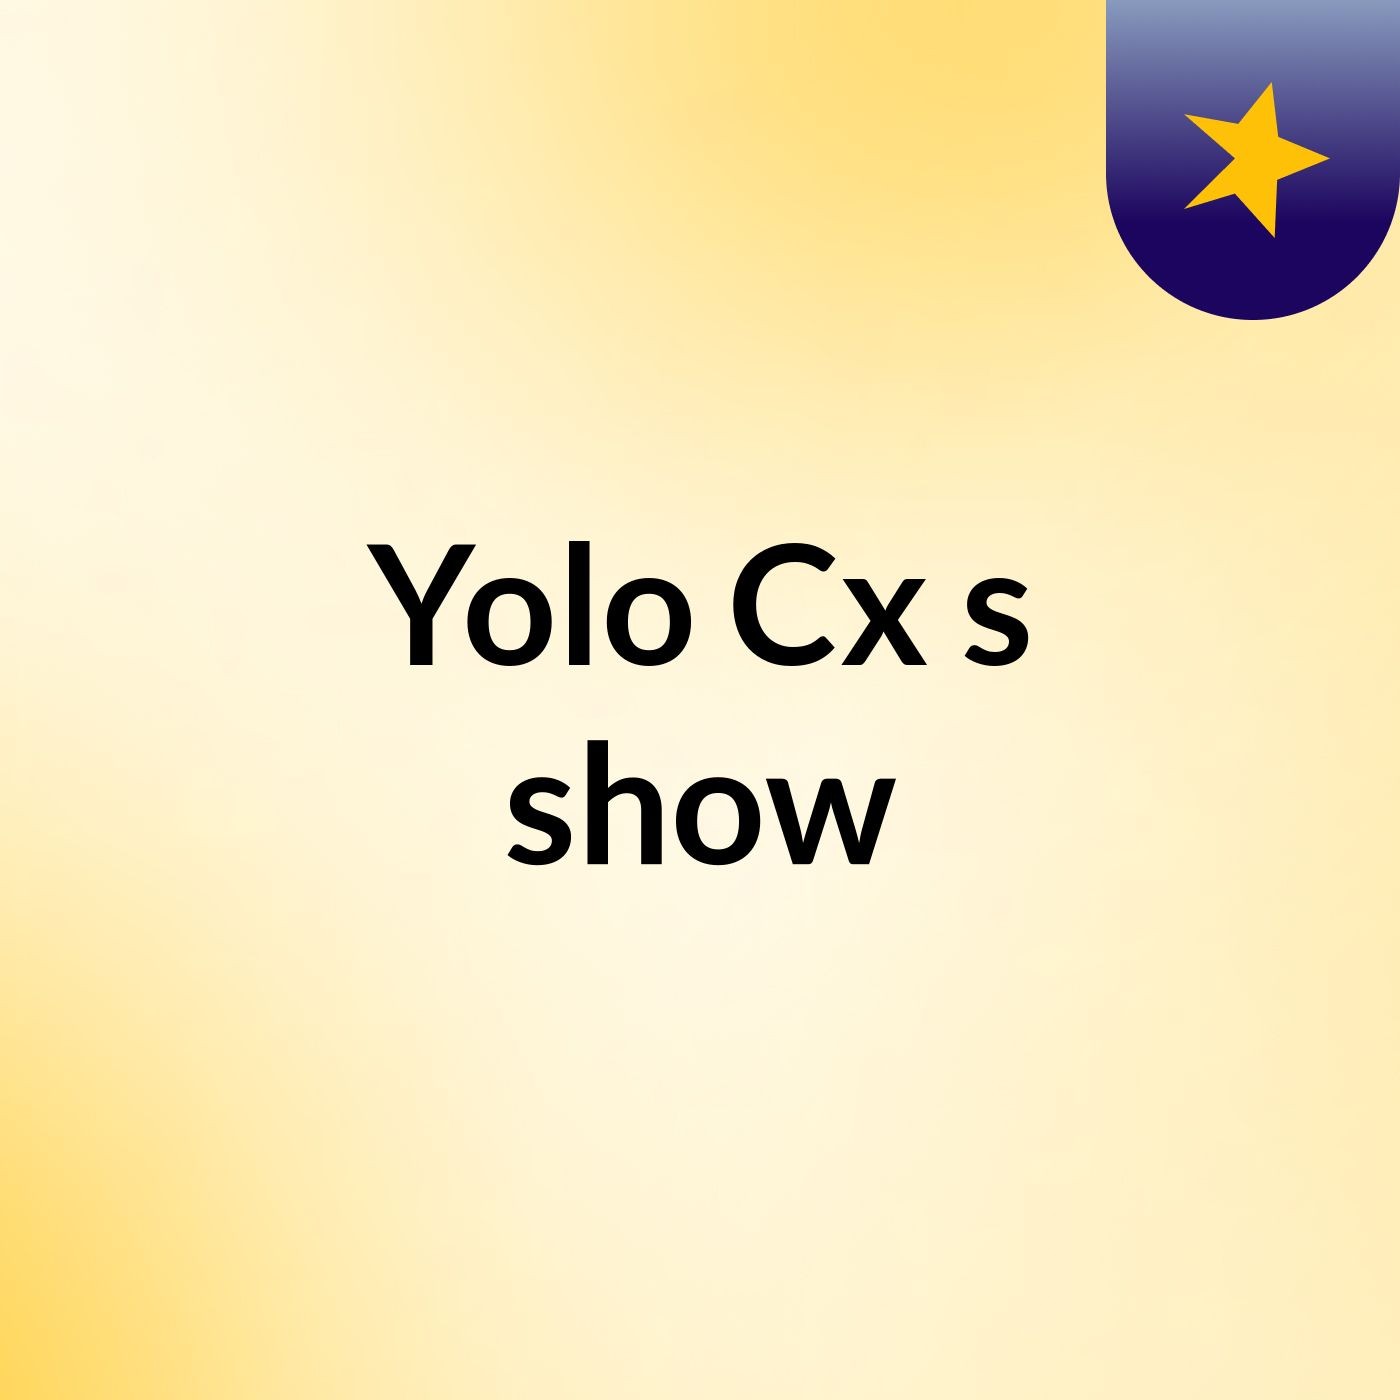 Yolo Cx's show